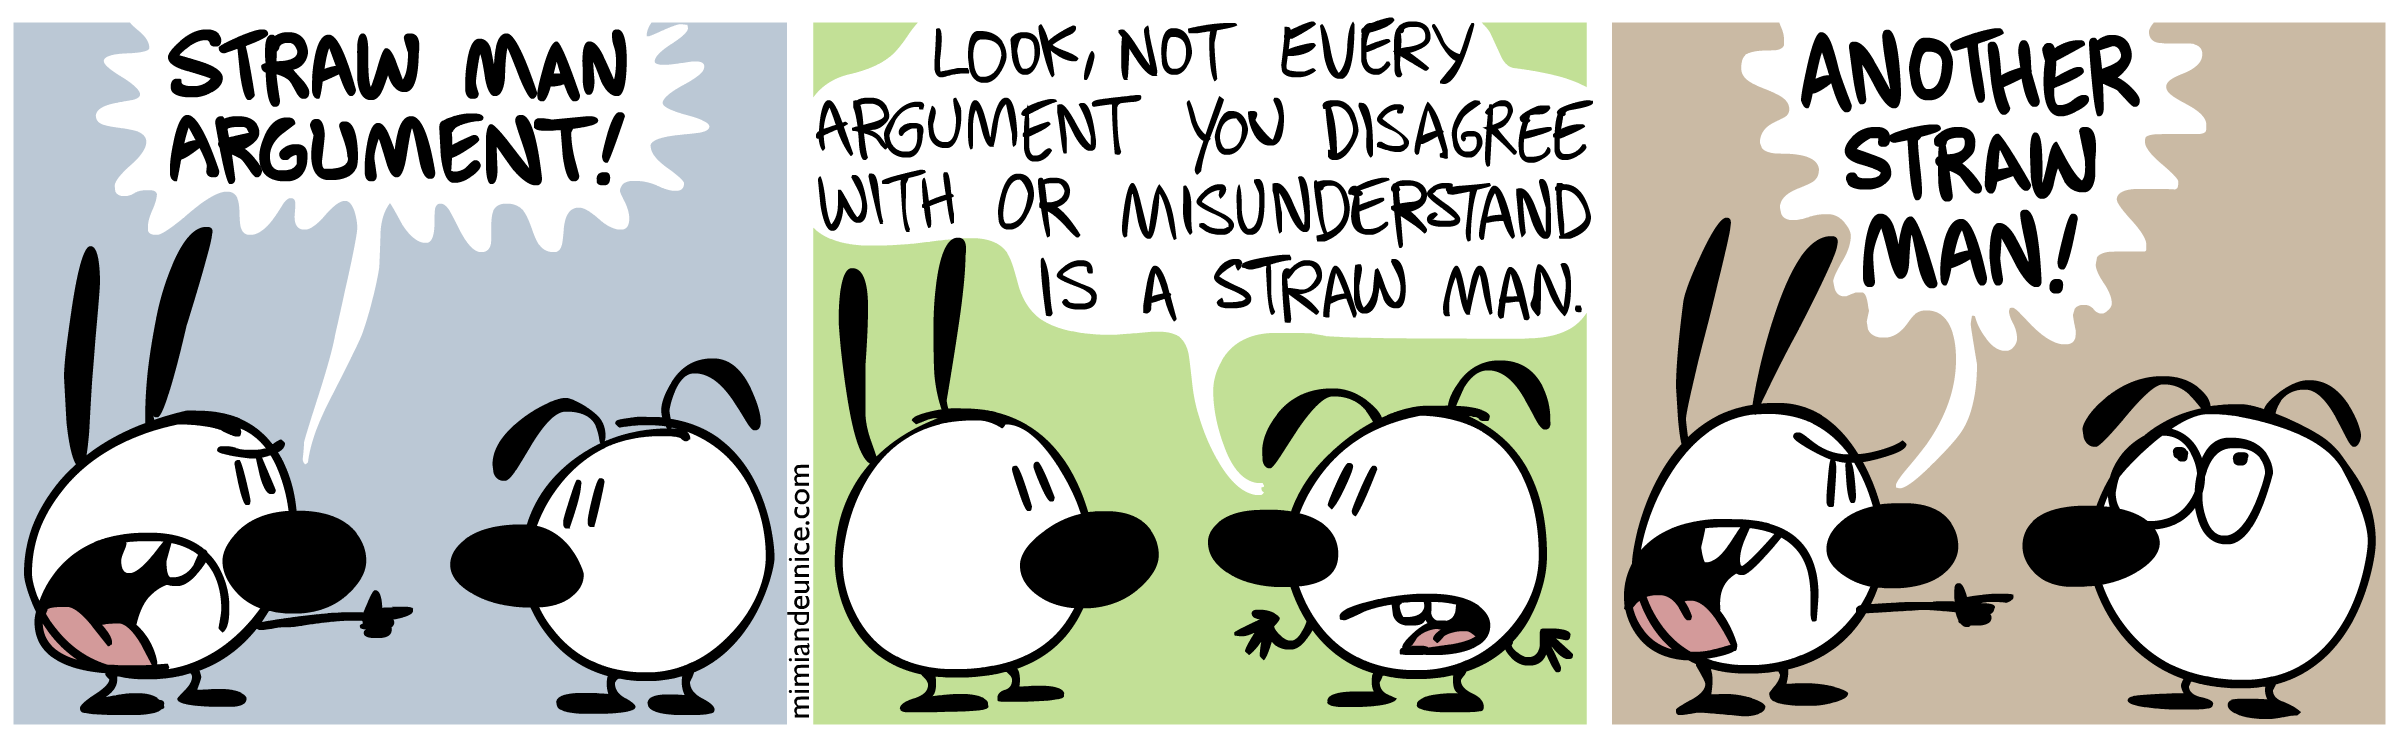 Argument definition. Straw man argument. Straw man Fallacy. Strawman approach. The last Straw фразеологизм.